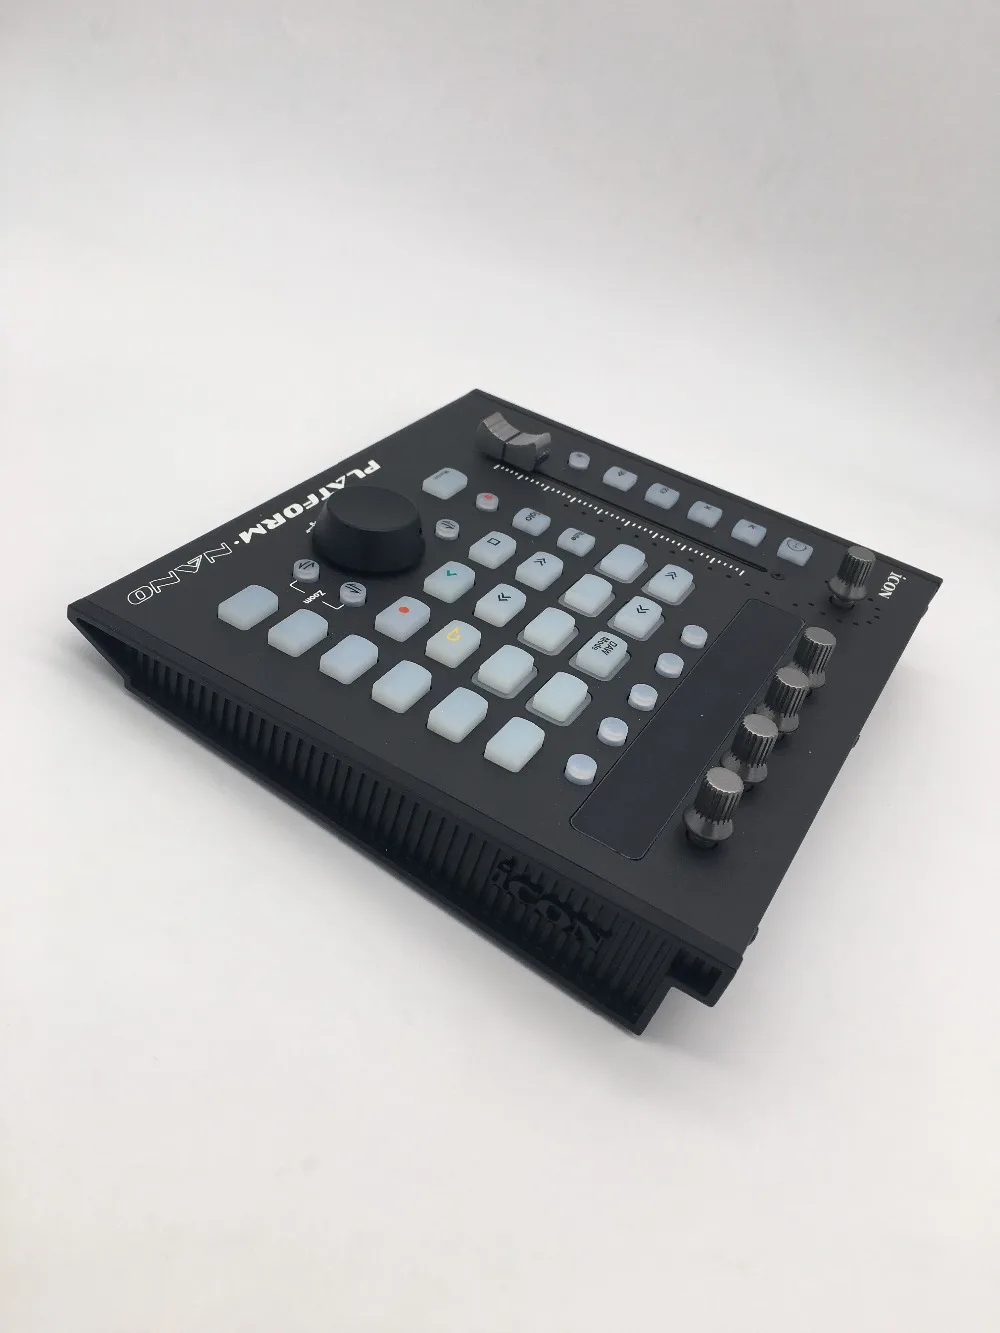 Значок платформы нано DAW контроллер USB MIDI/аудио контроллер с моторизованным фейдером для производителя, инженера, музыканта, студии